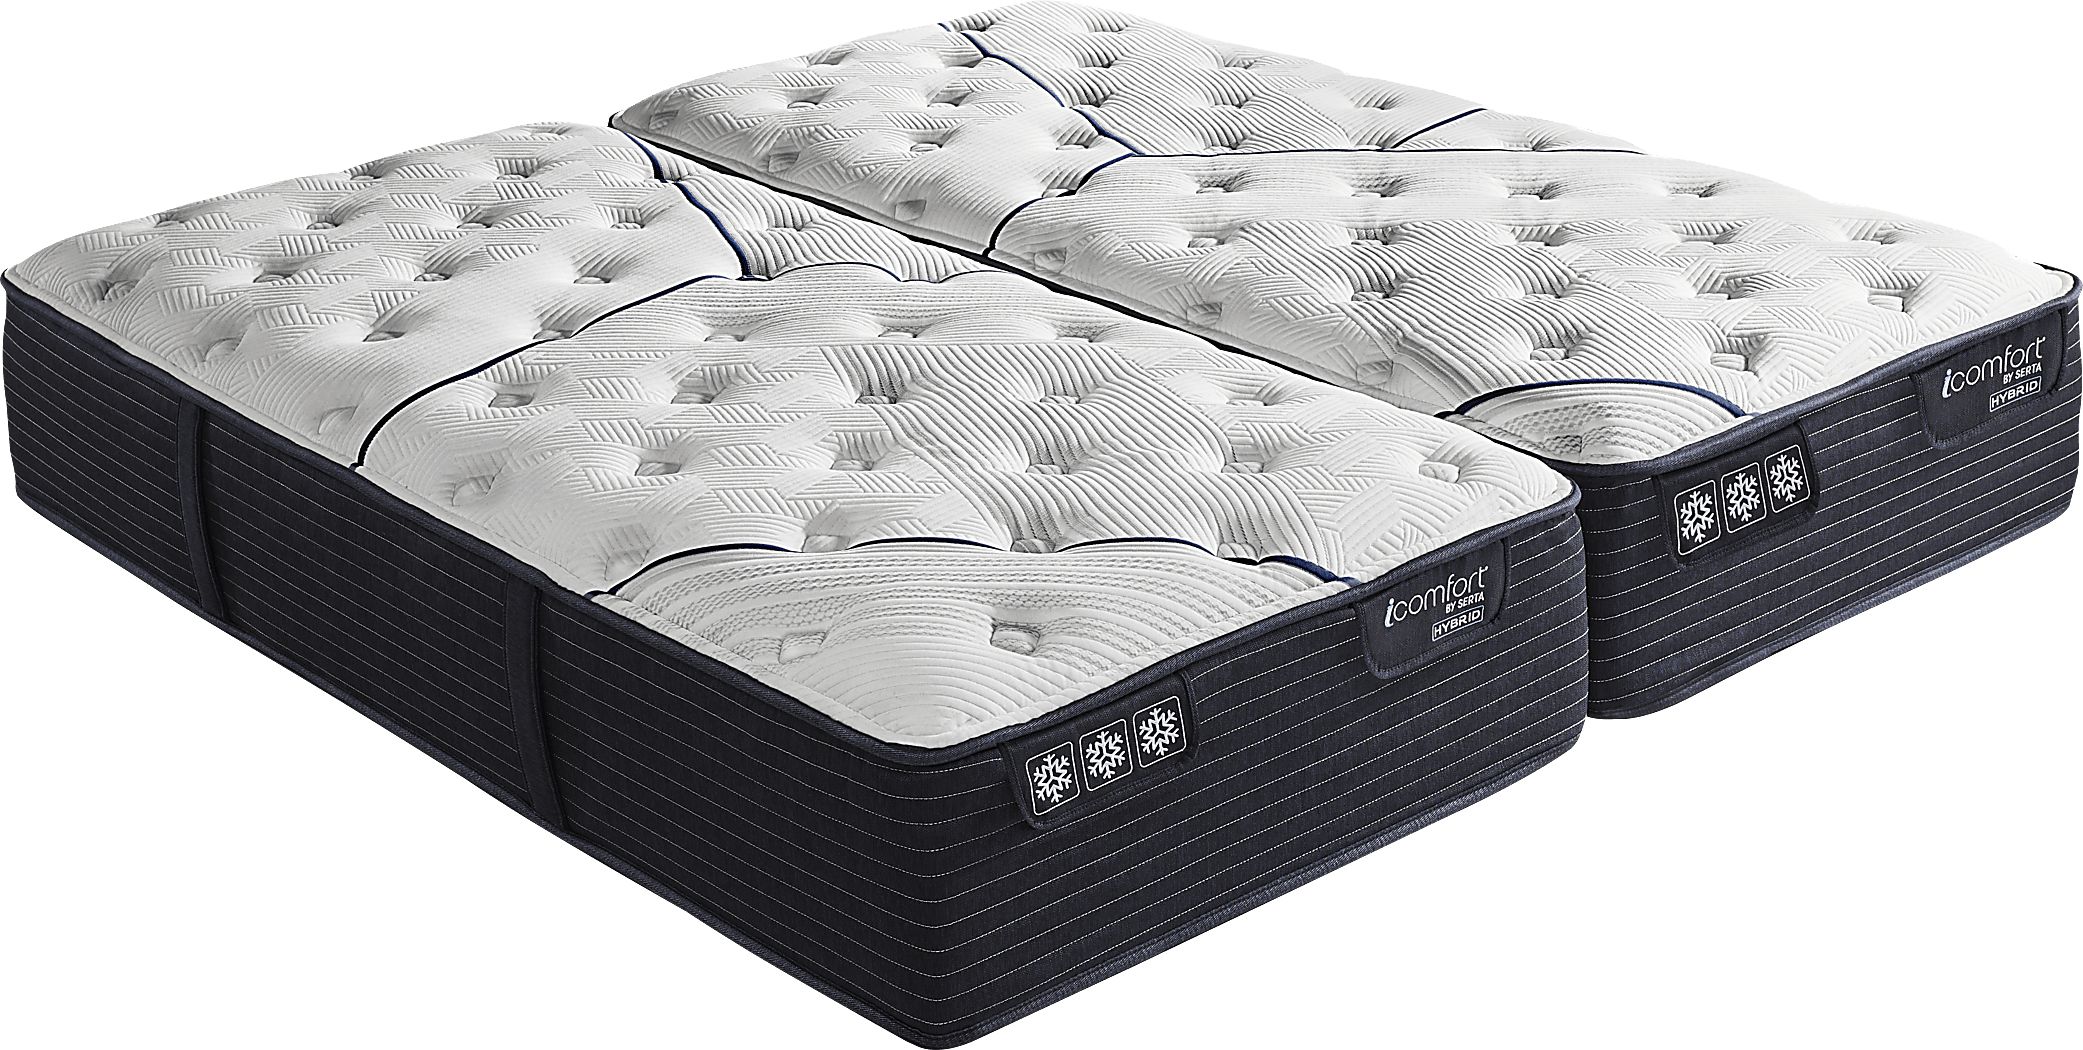 waterproof mattress serta icomfort bluee 100 queen